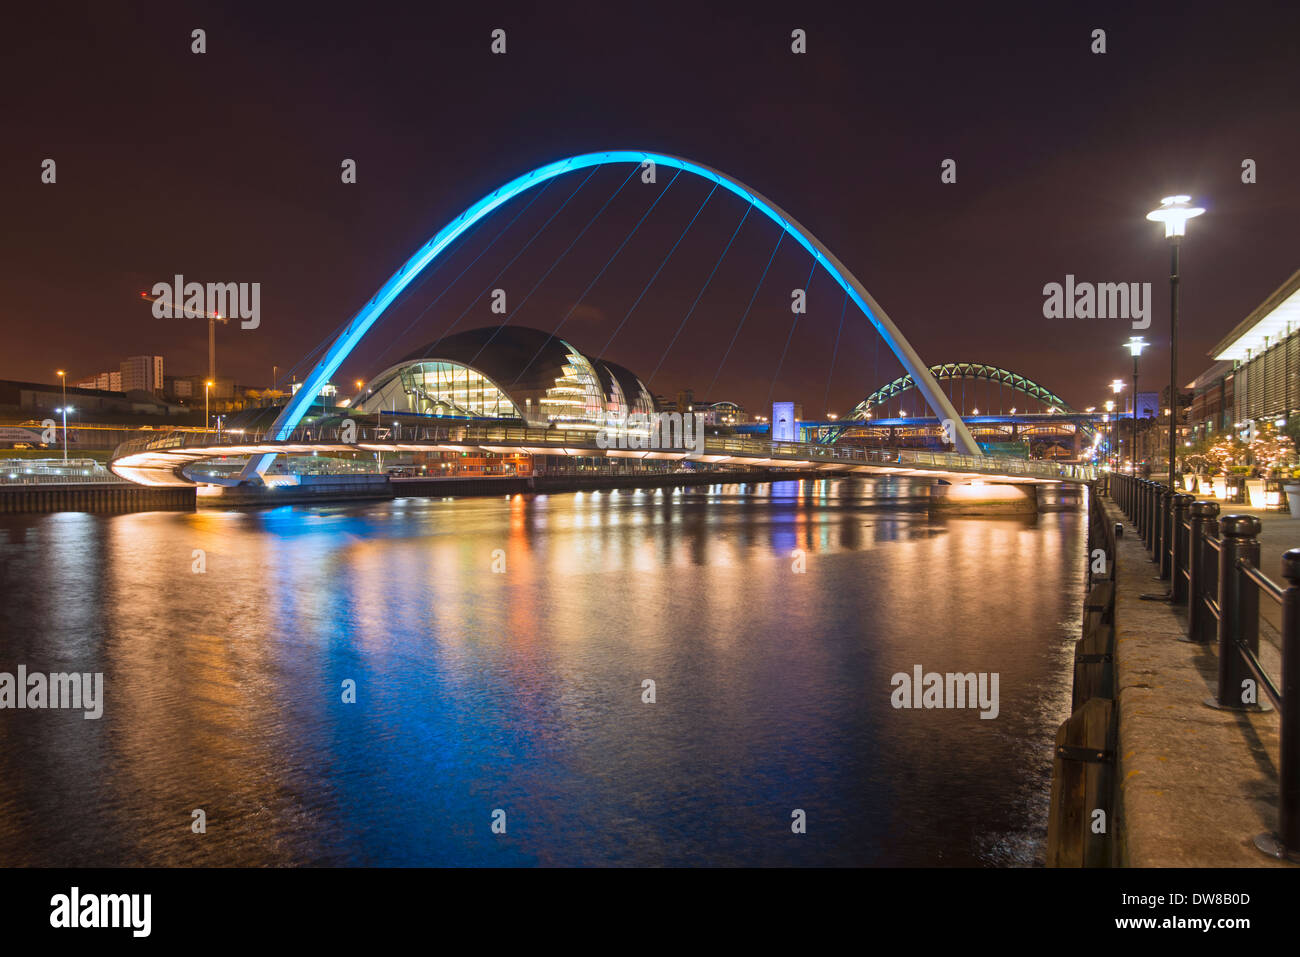 Newcastle y Gateshead quayside, por la noche, el puente del milenio y el sabio siendo prominente. Foto de stock